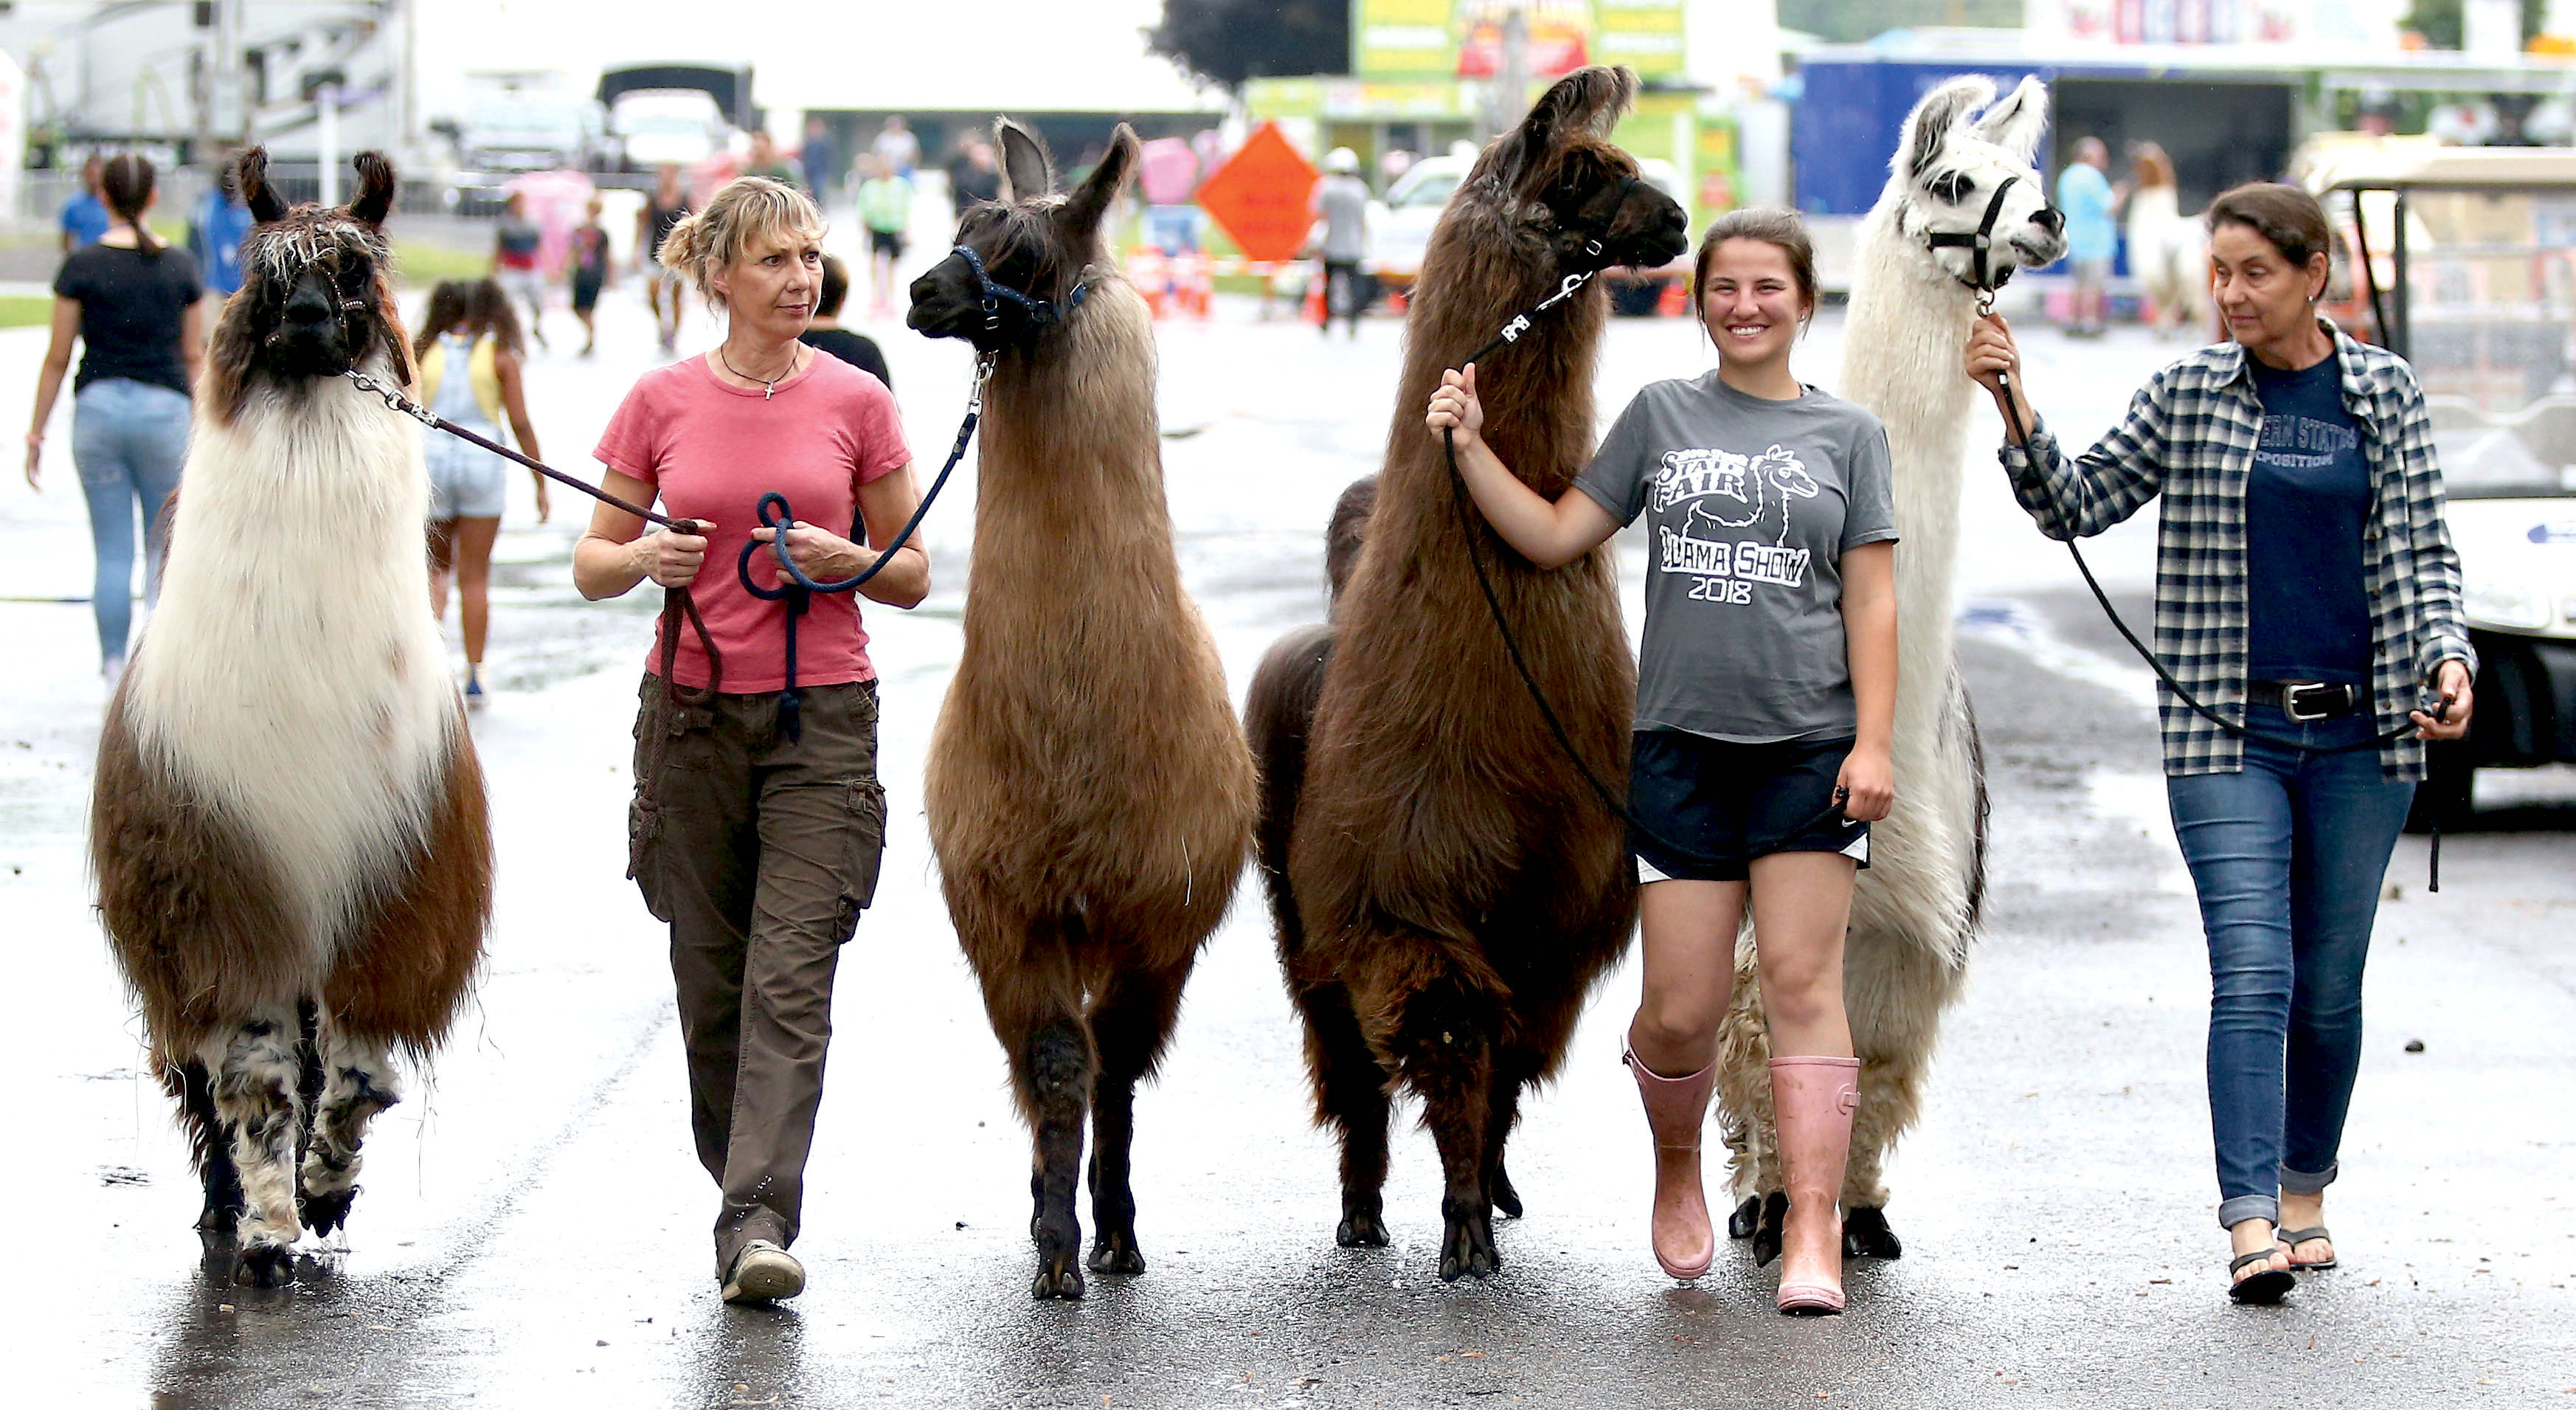 Llamas being walked at New York State Fair